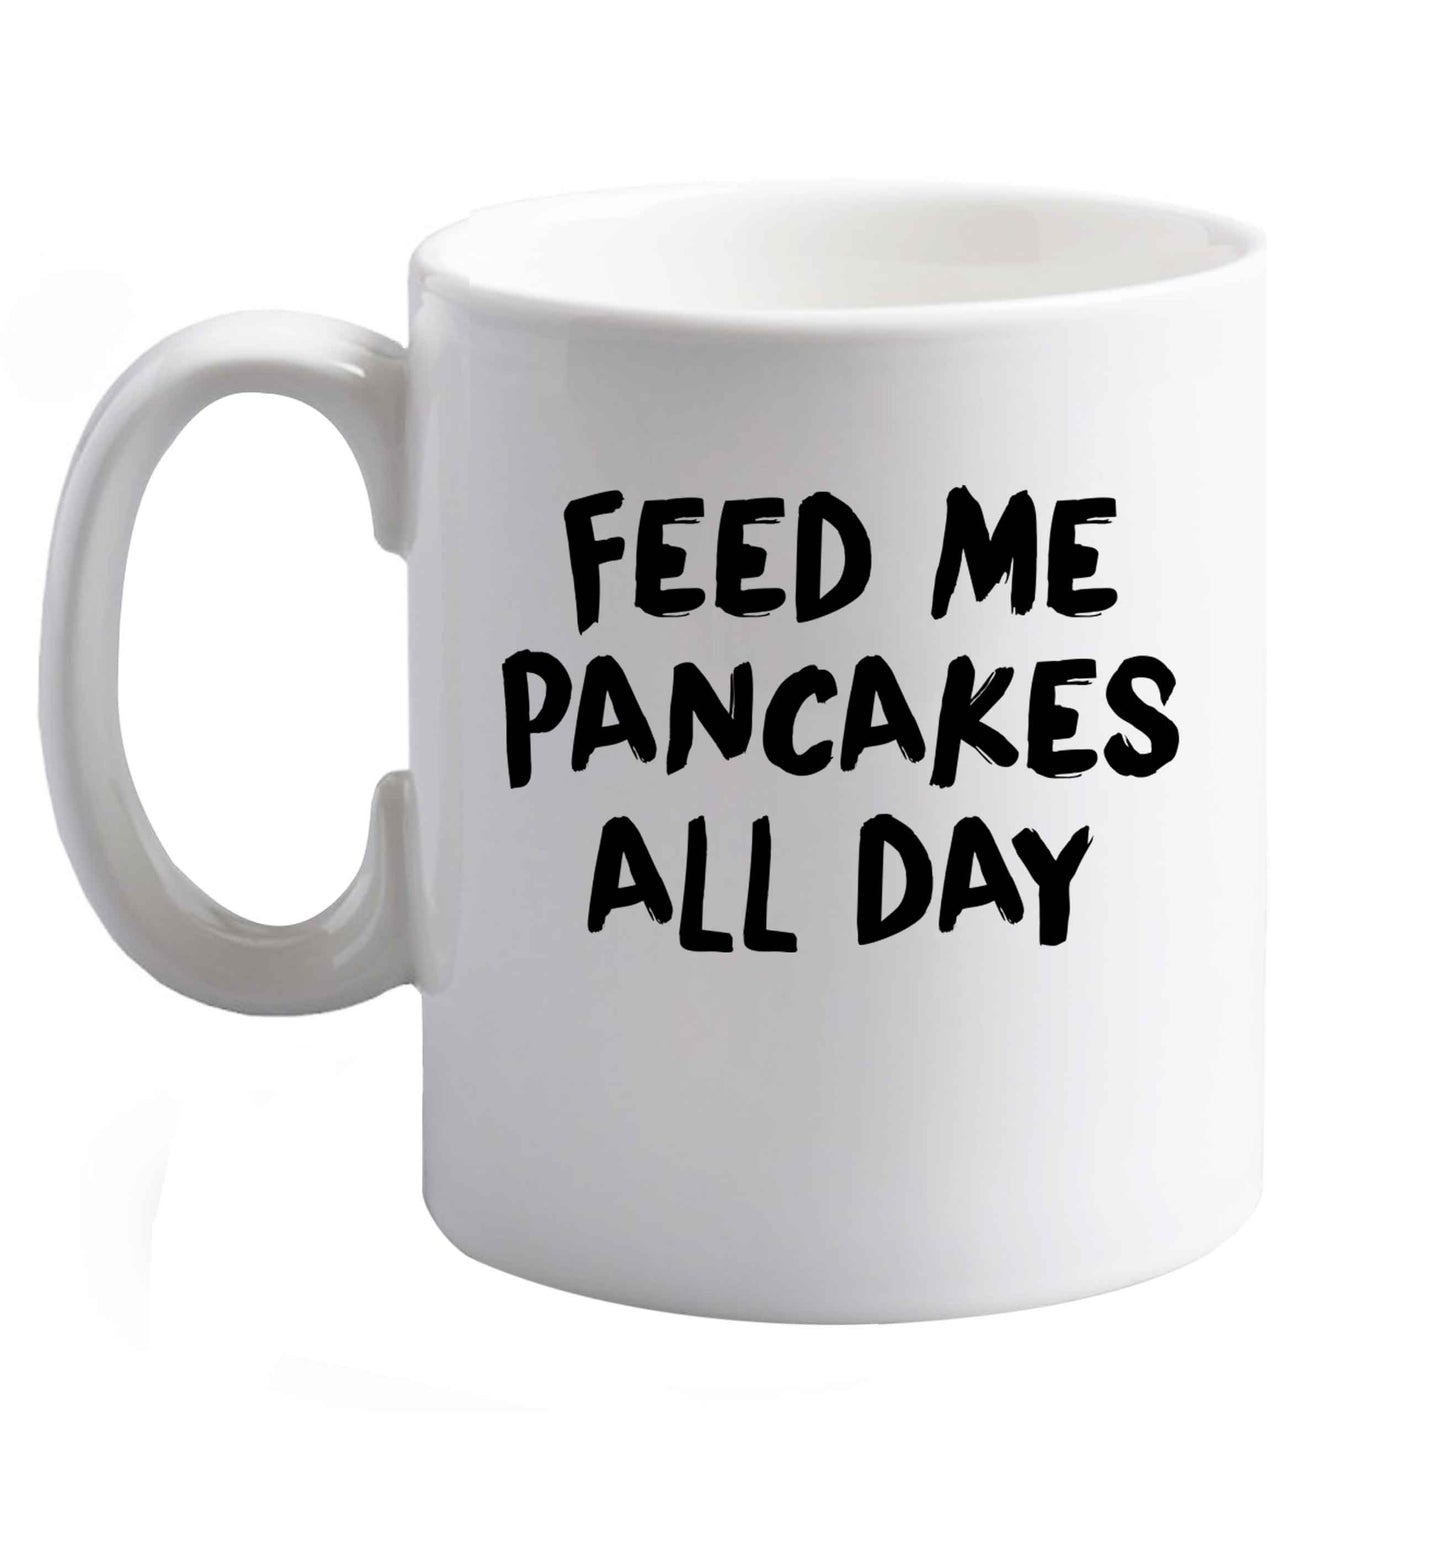 10 oz I Love Pancakes ceramic mug right handed